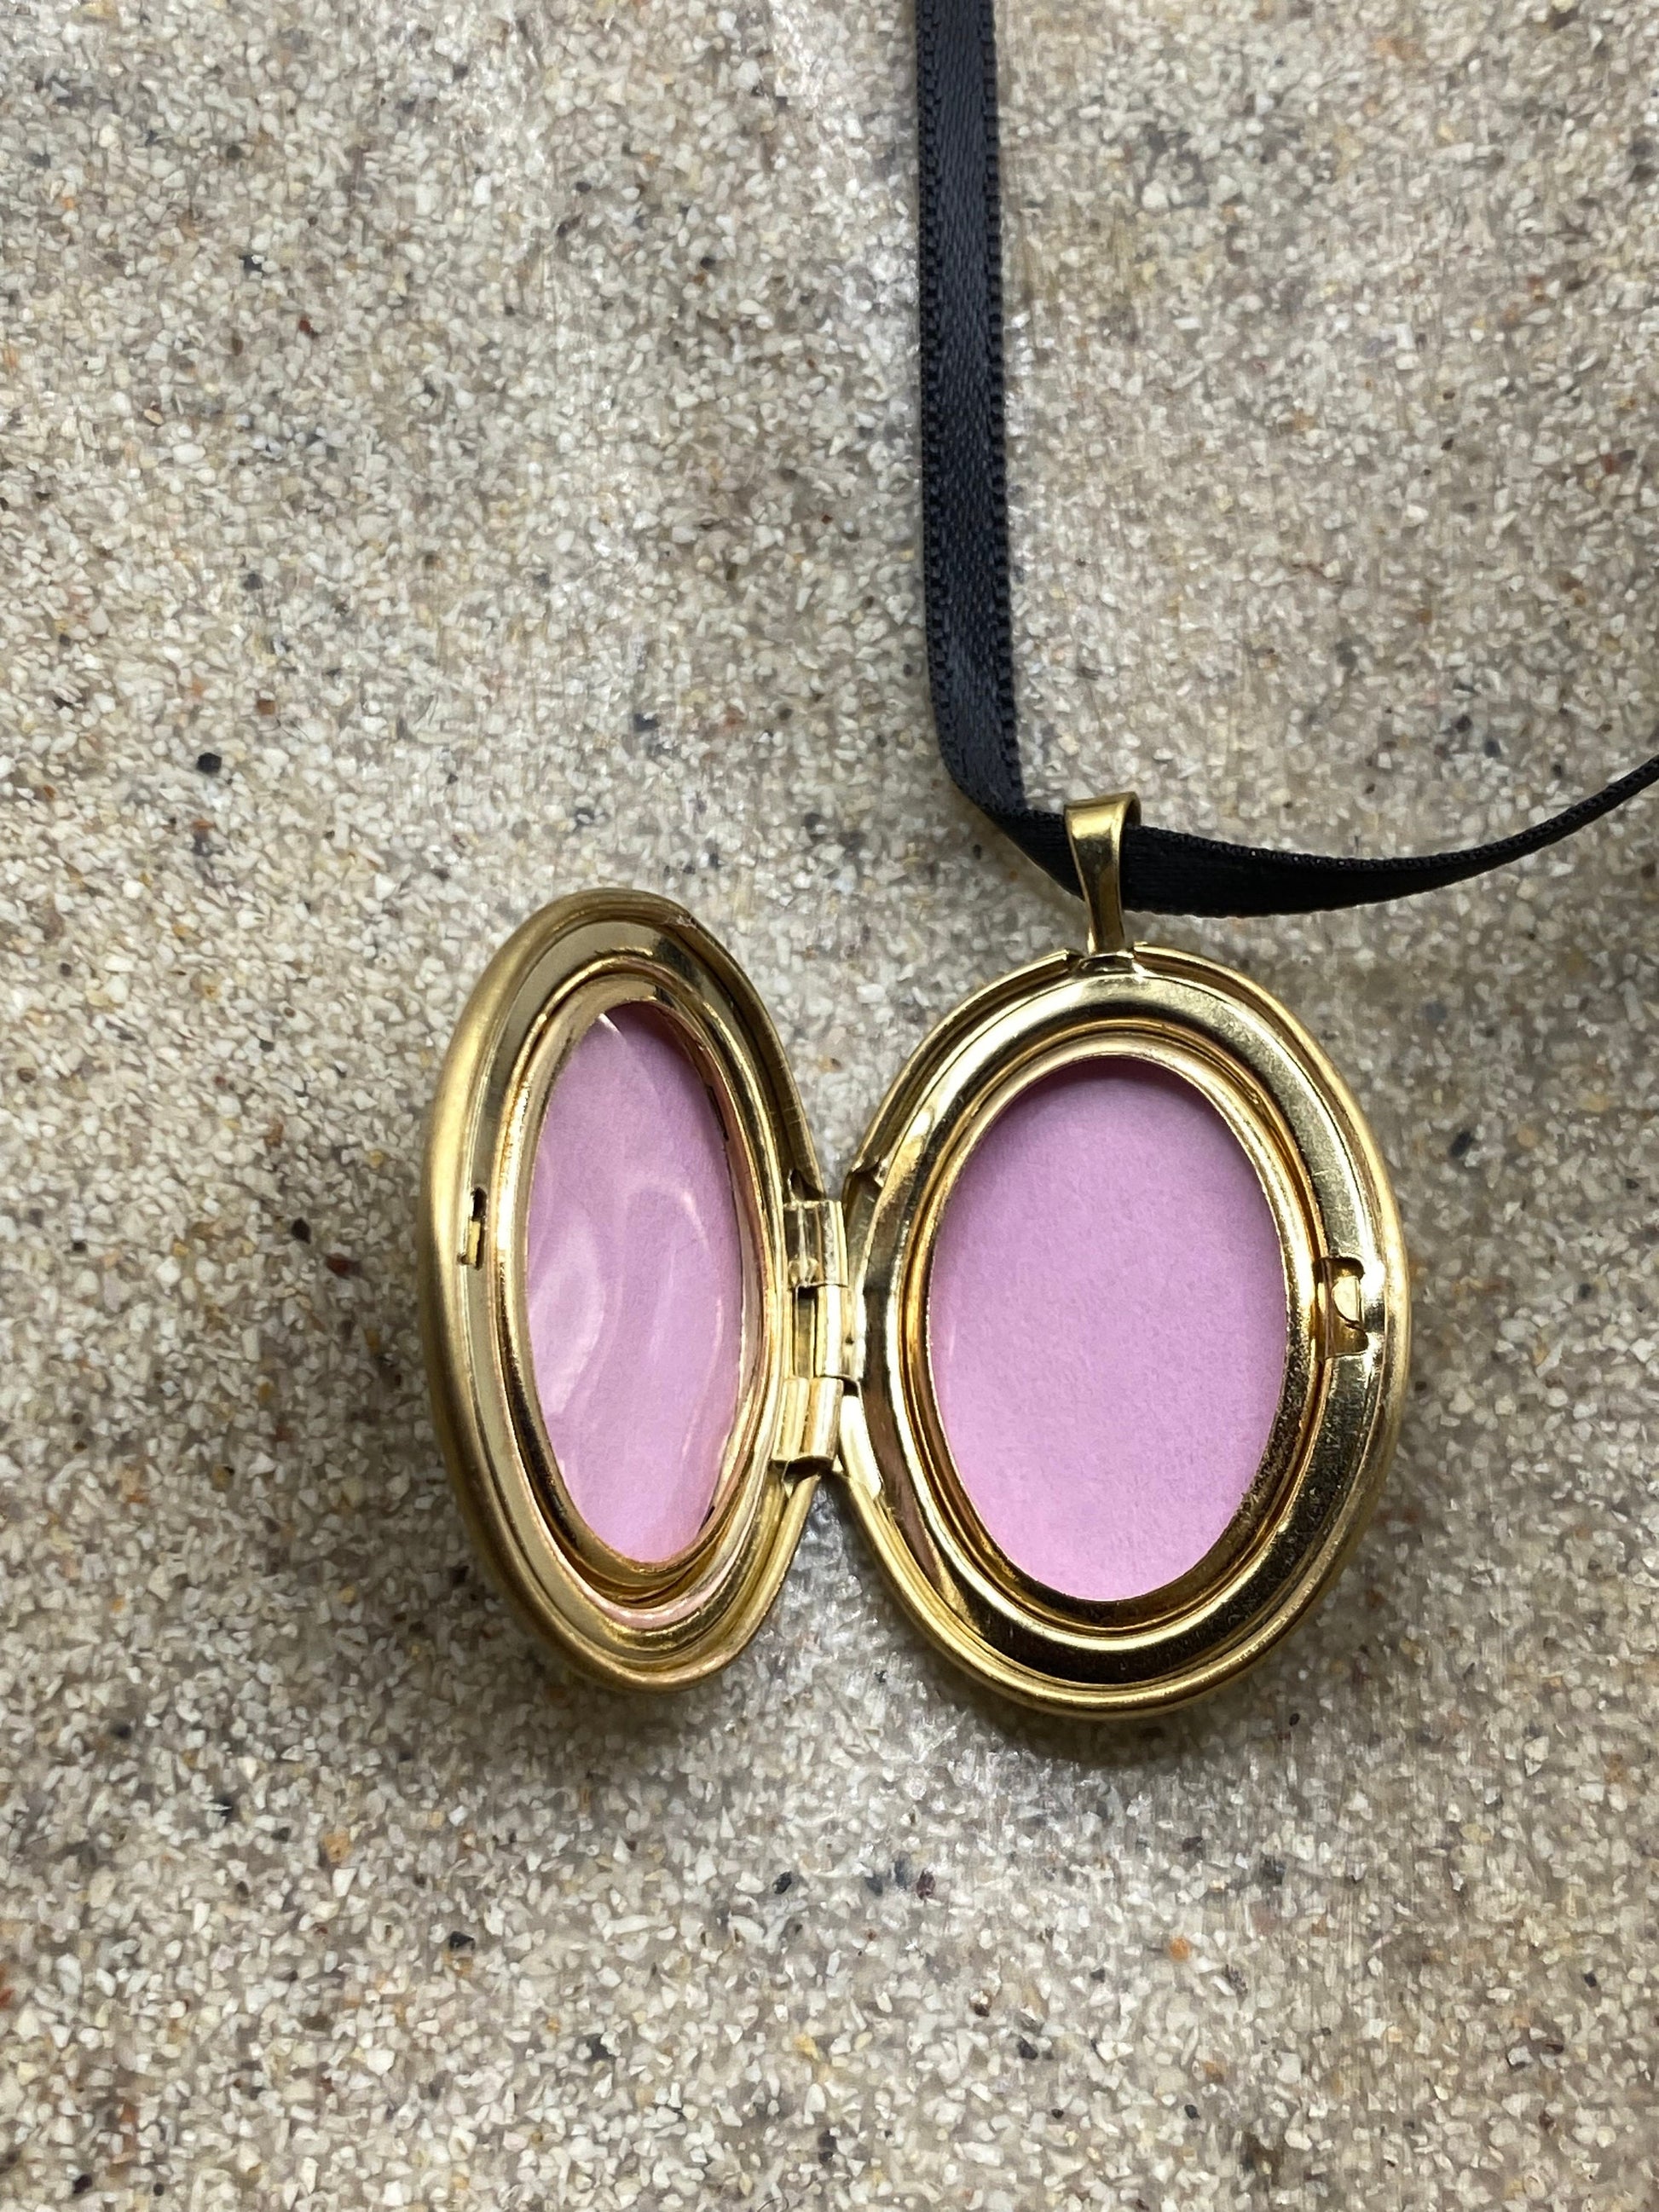 Vintage Heart Locket Choker Gold Filled MOM Necklace